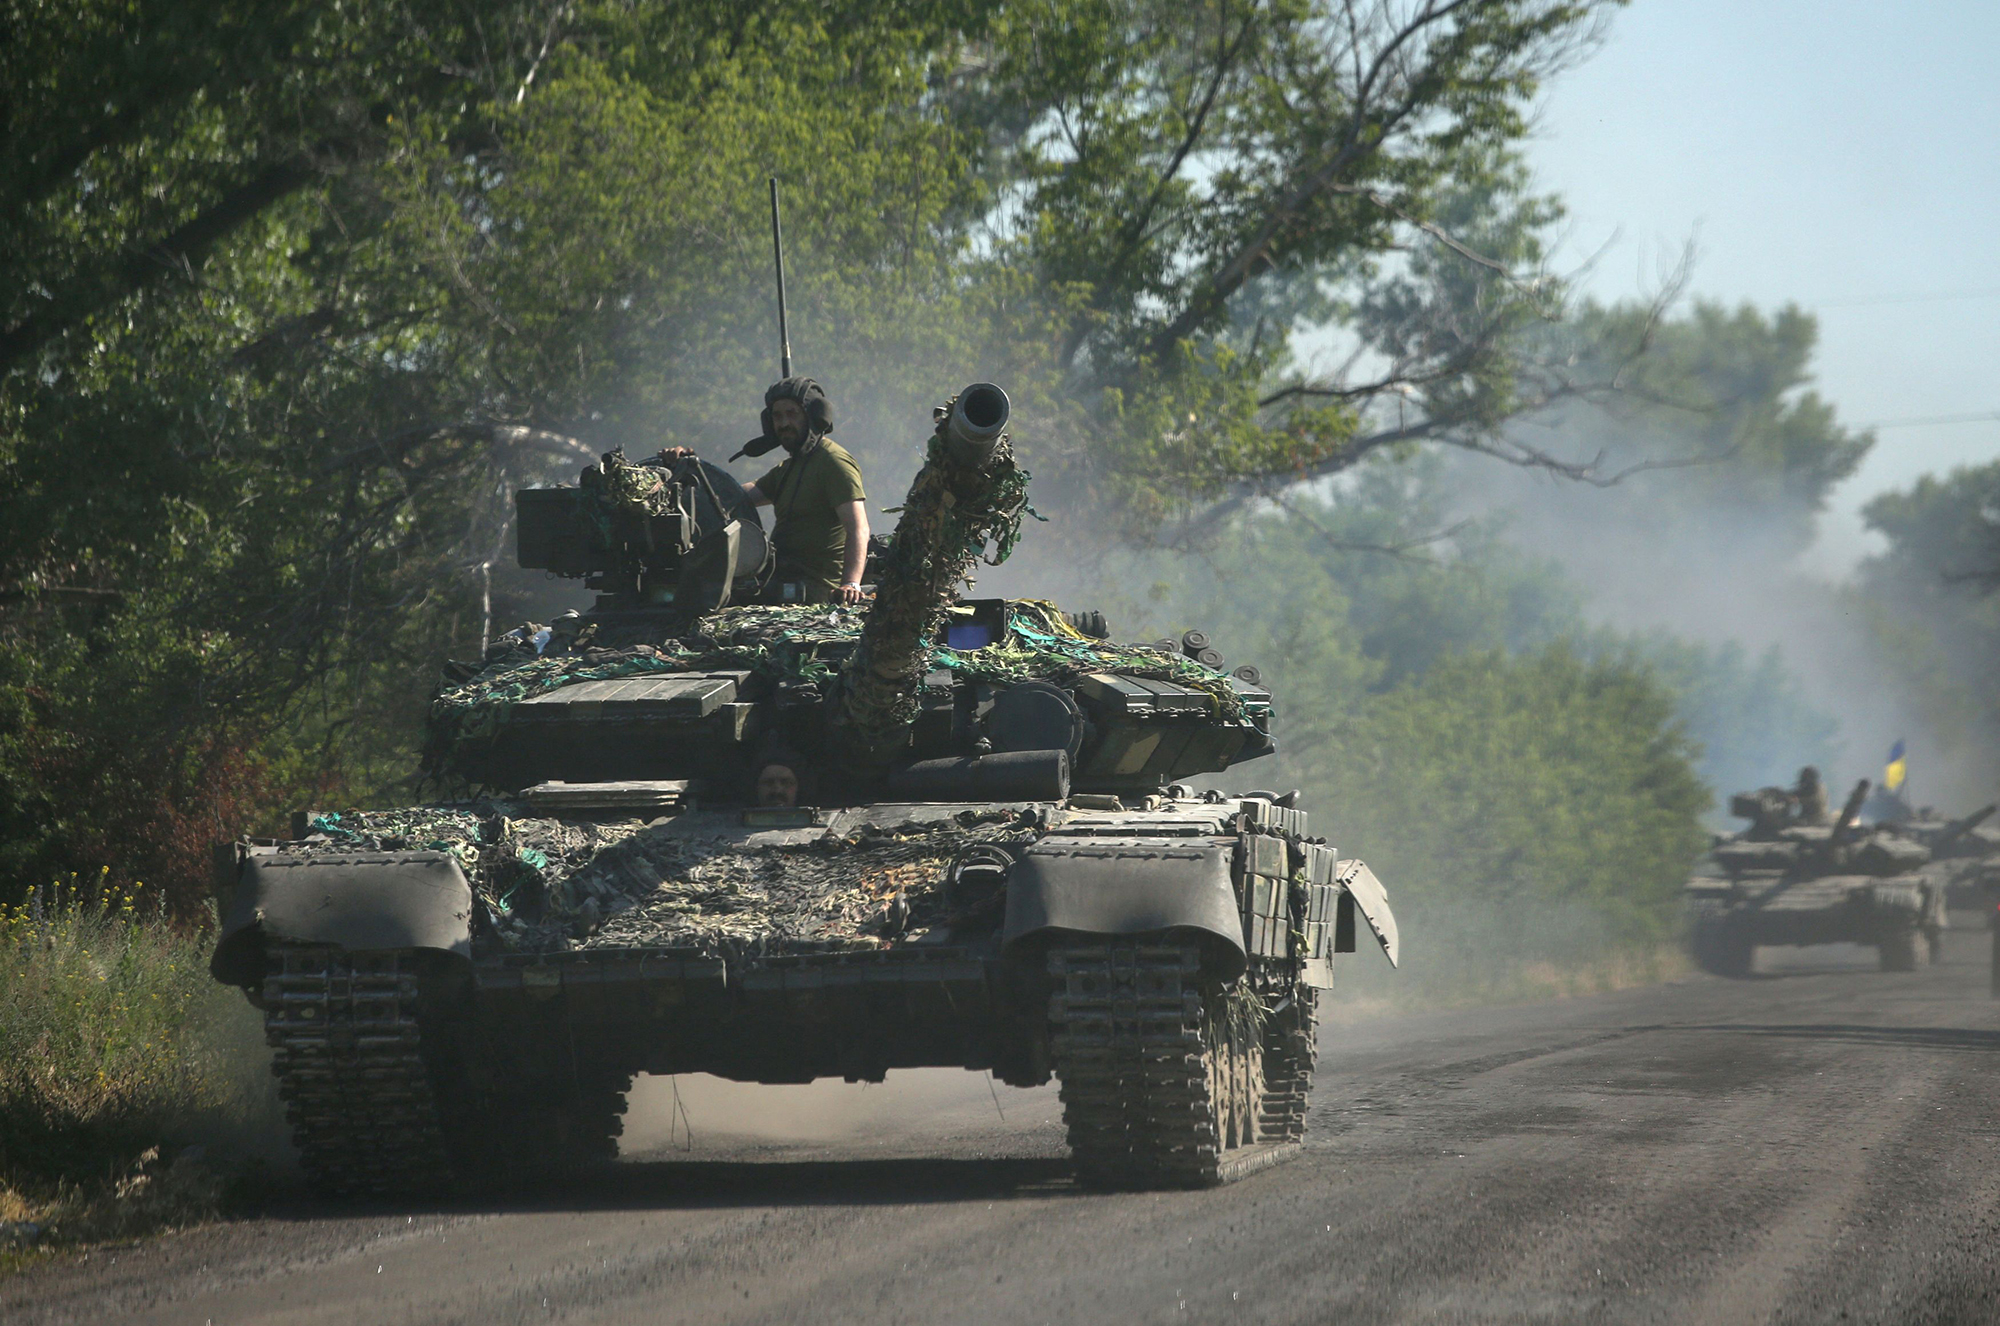 انسحبت القوات الأوكرانية من منطقة دونباس بشرق أوكرانيا في 21 يونيو ، حيث تقول أوكرانيا إن القصف الروسي تسبب في "تدمير كارثي" في مدينة Lysychansk الصناعية الشرقية.